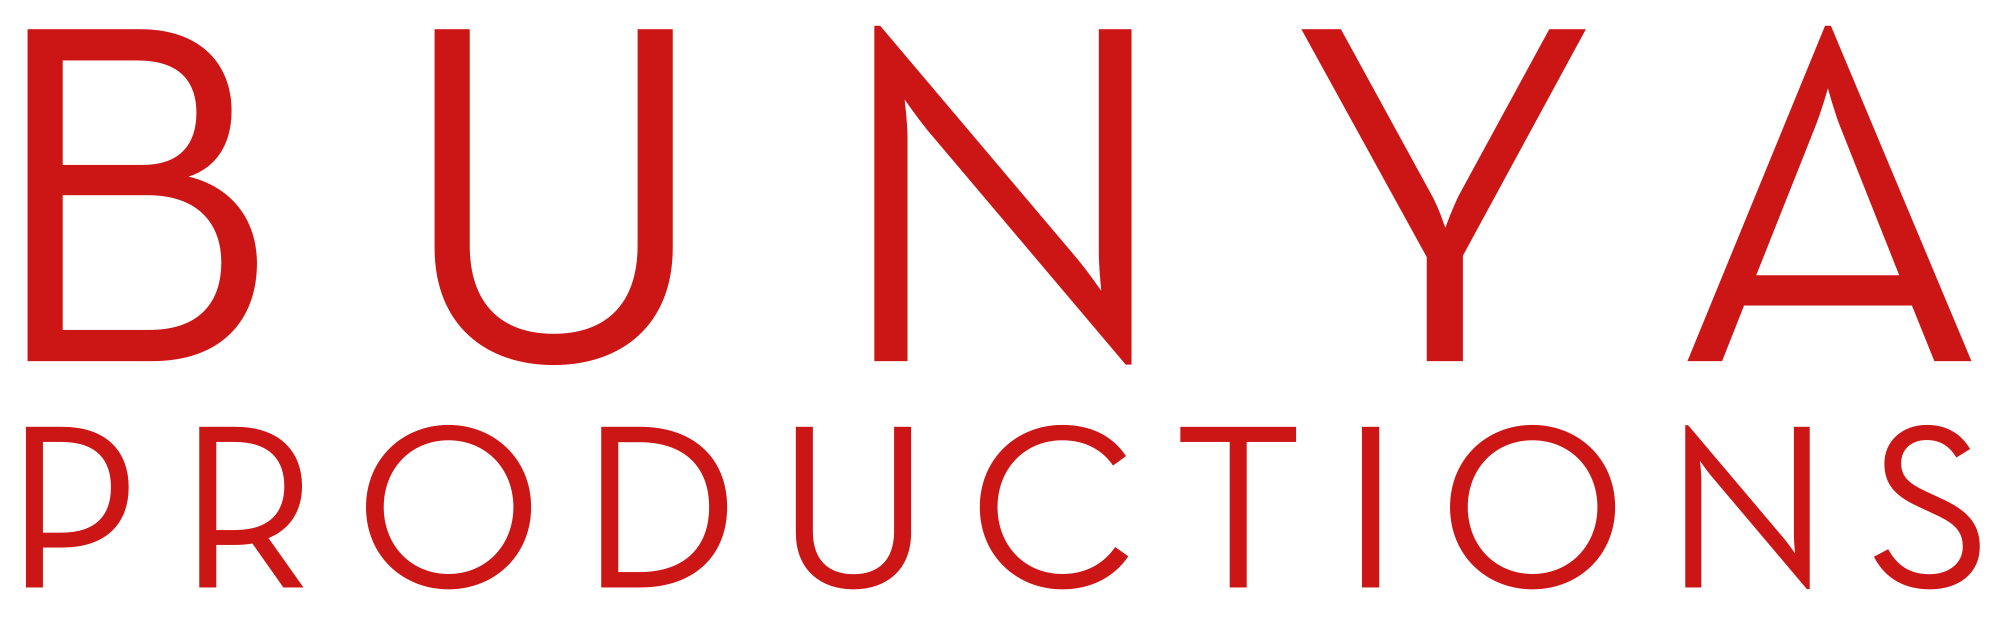 Bunya Productions